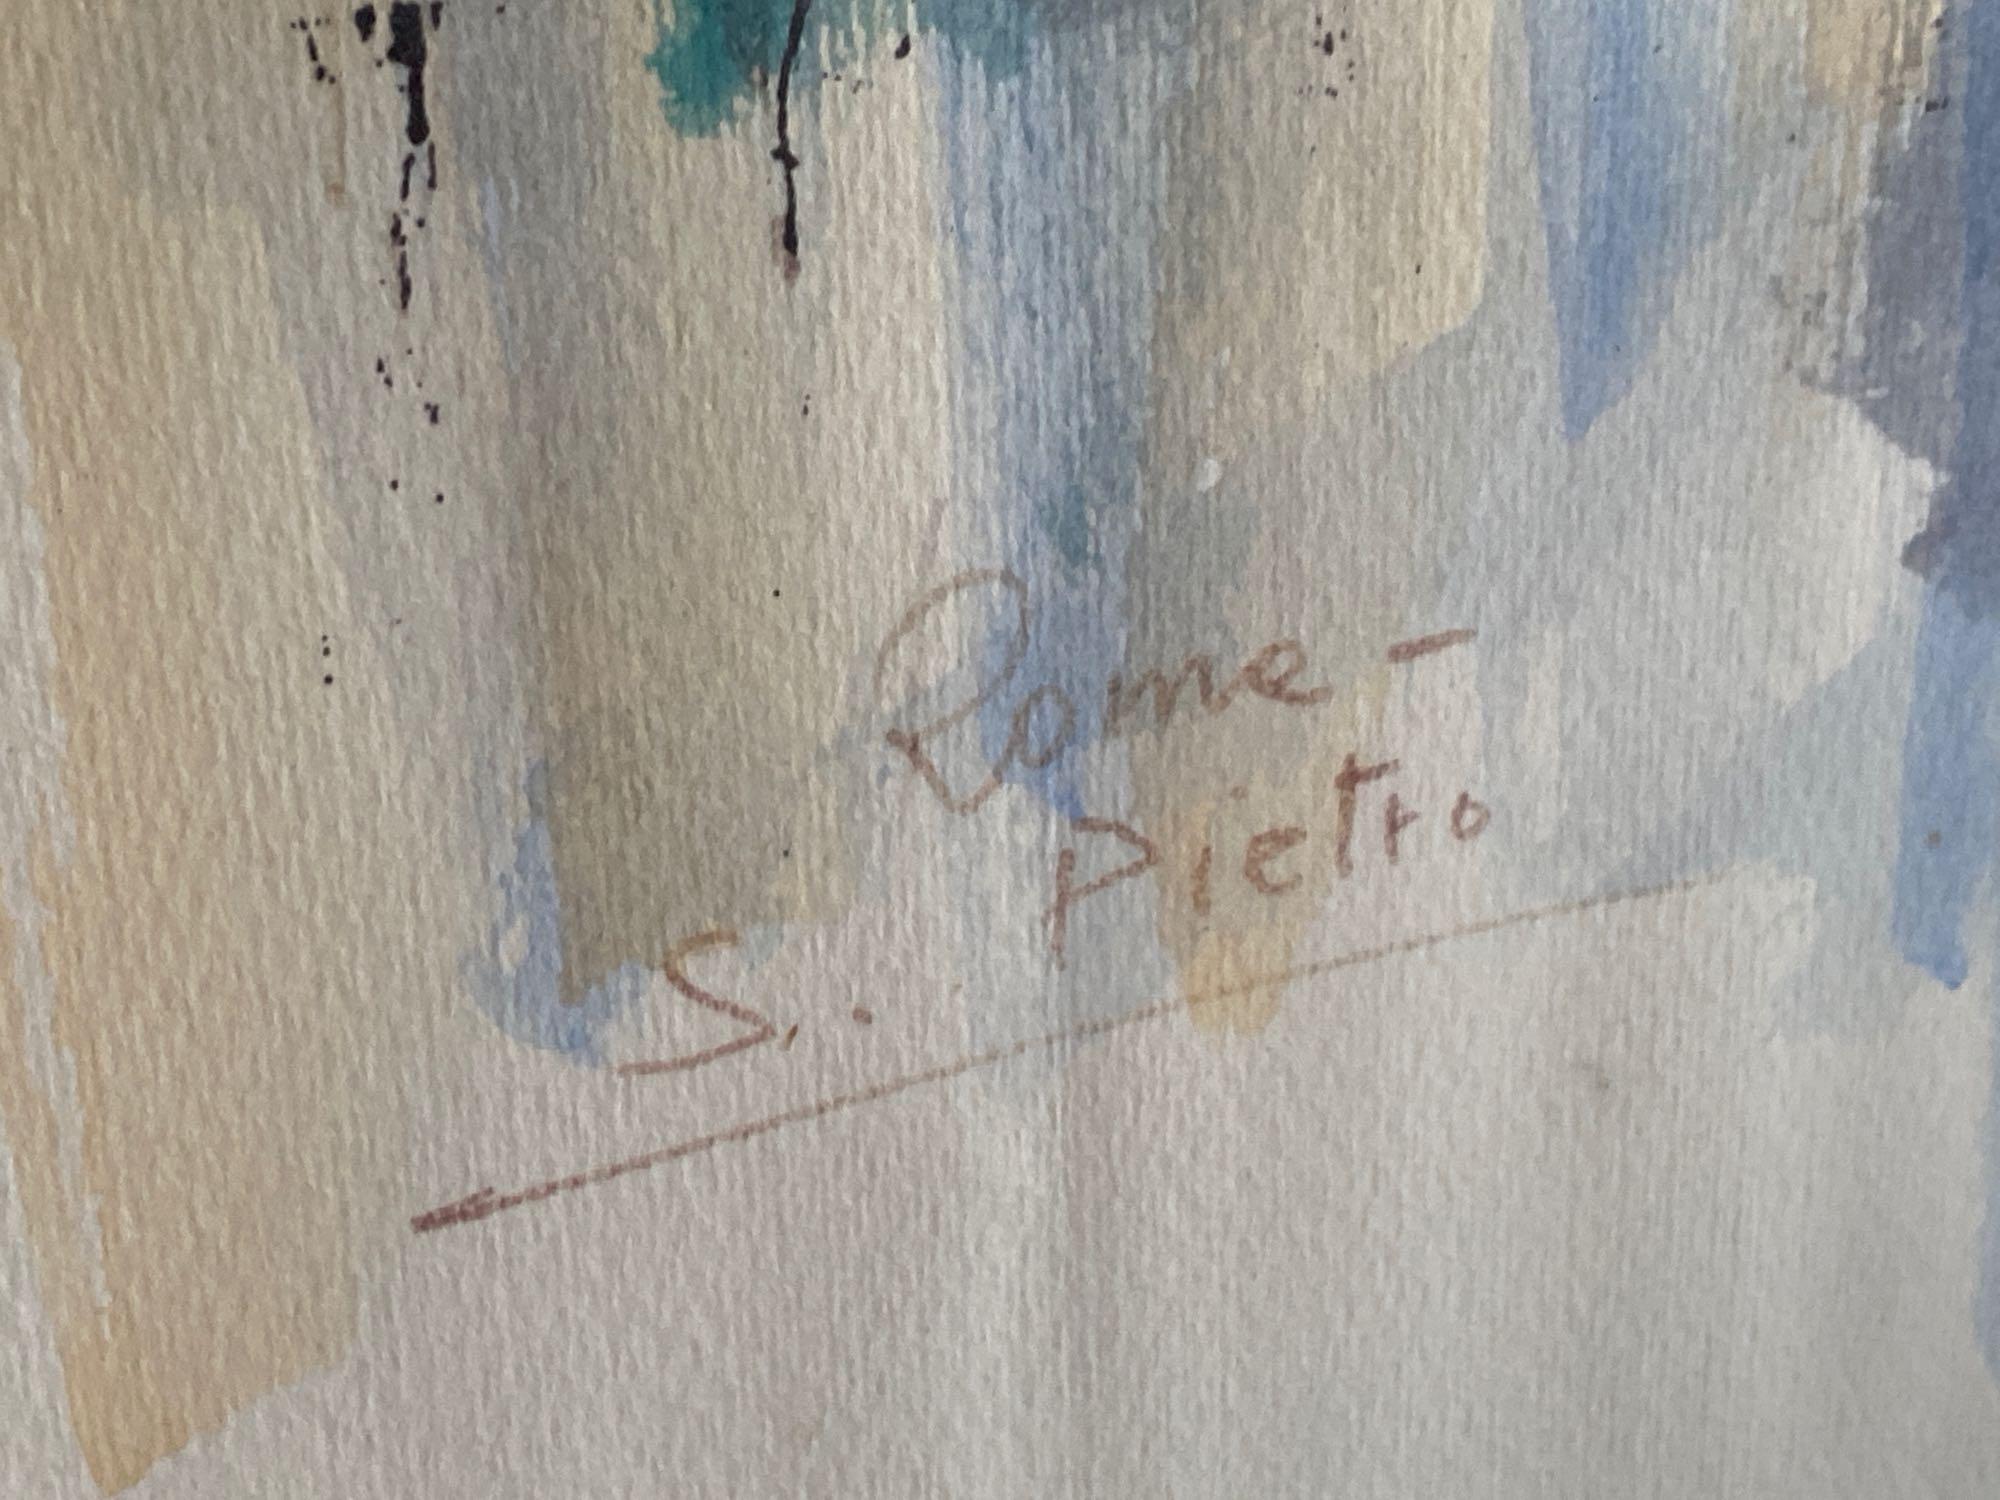 Signed & Framed Wall Art, Rome